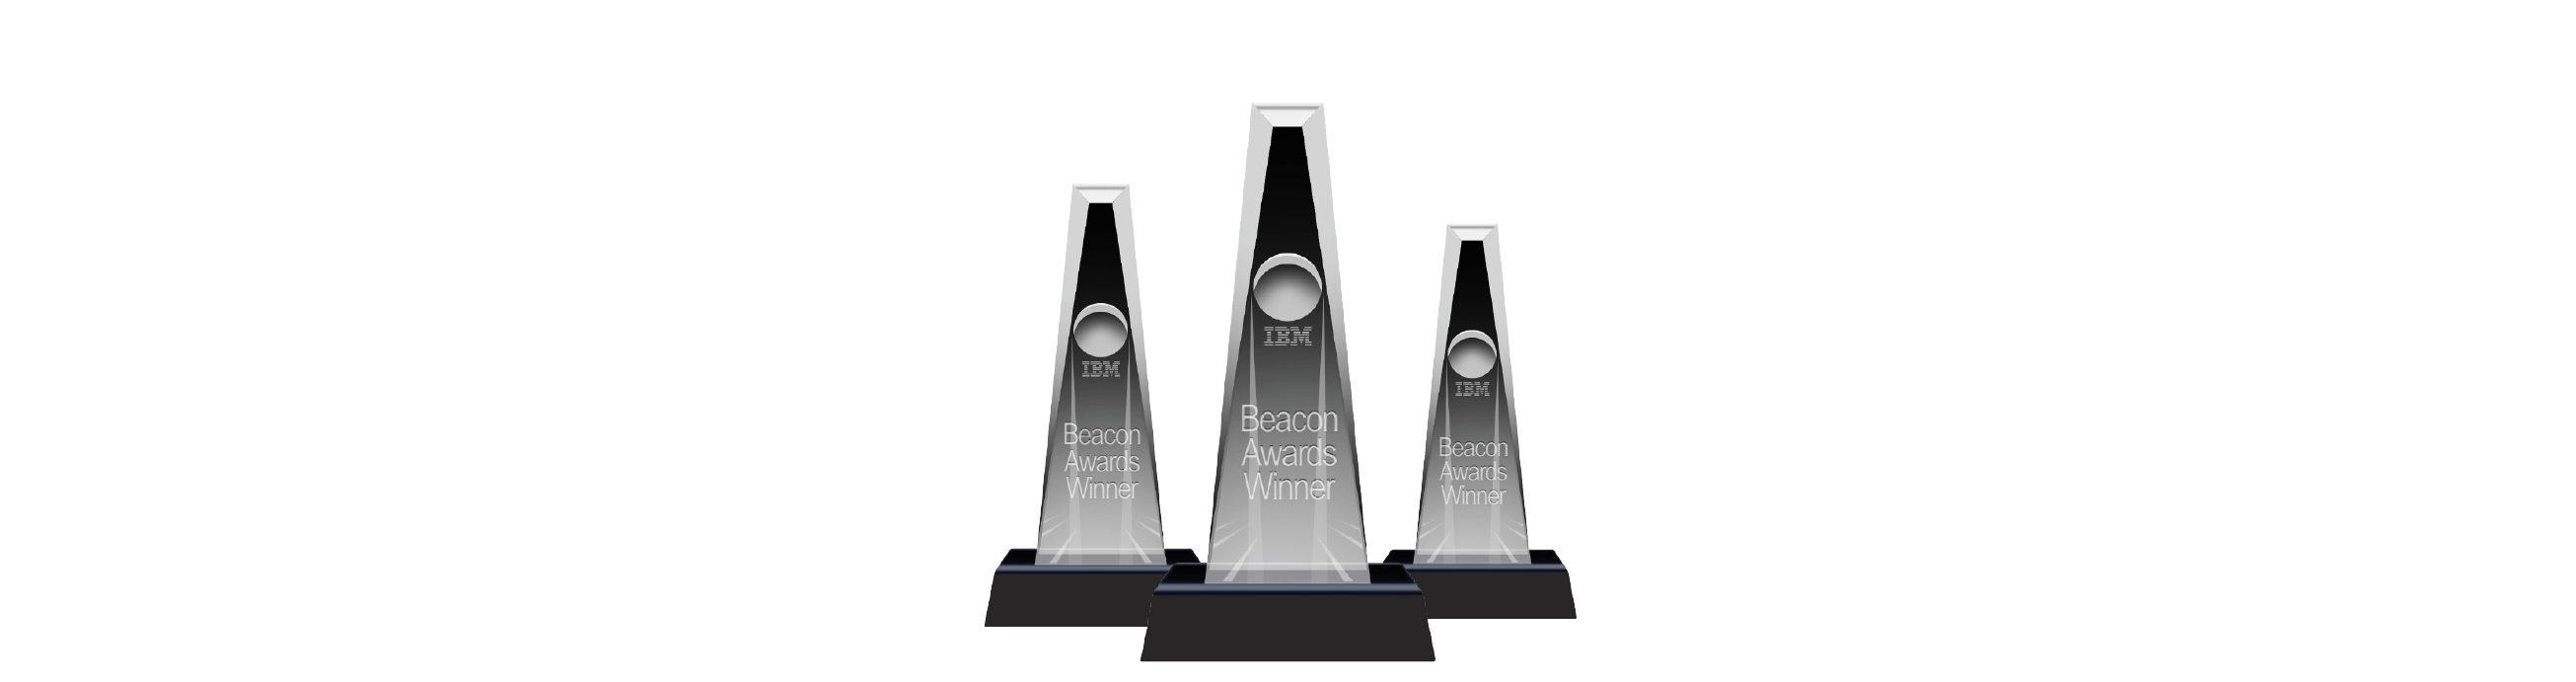 DataClarity IBM Beacon Awards